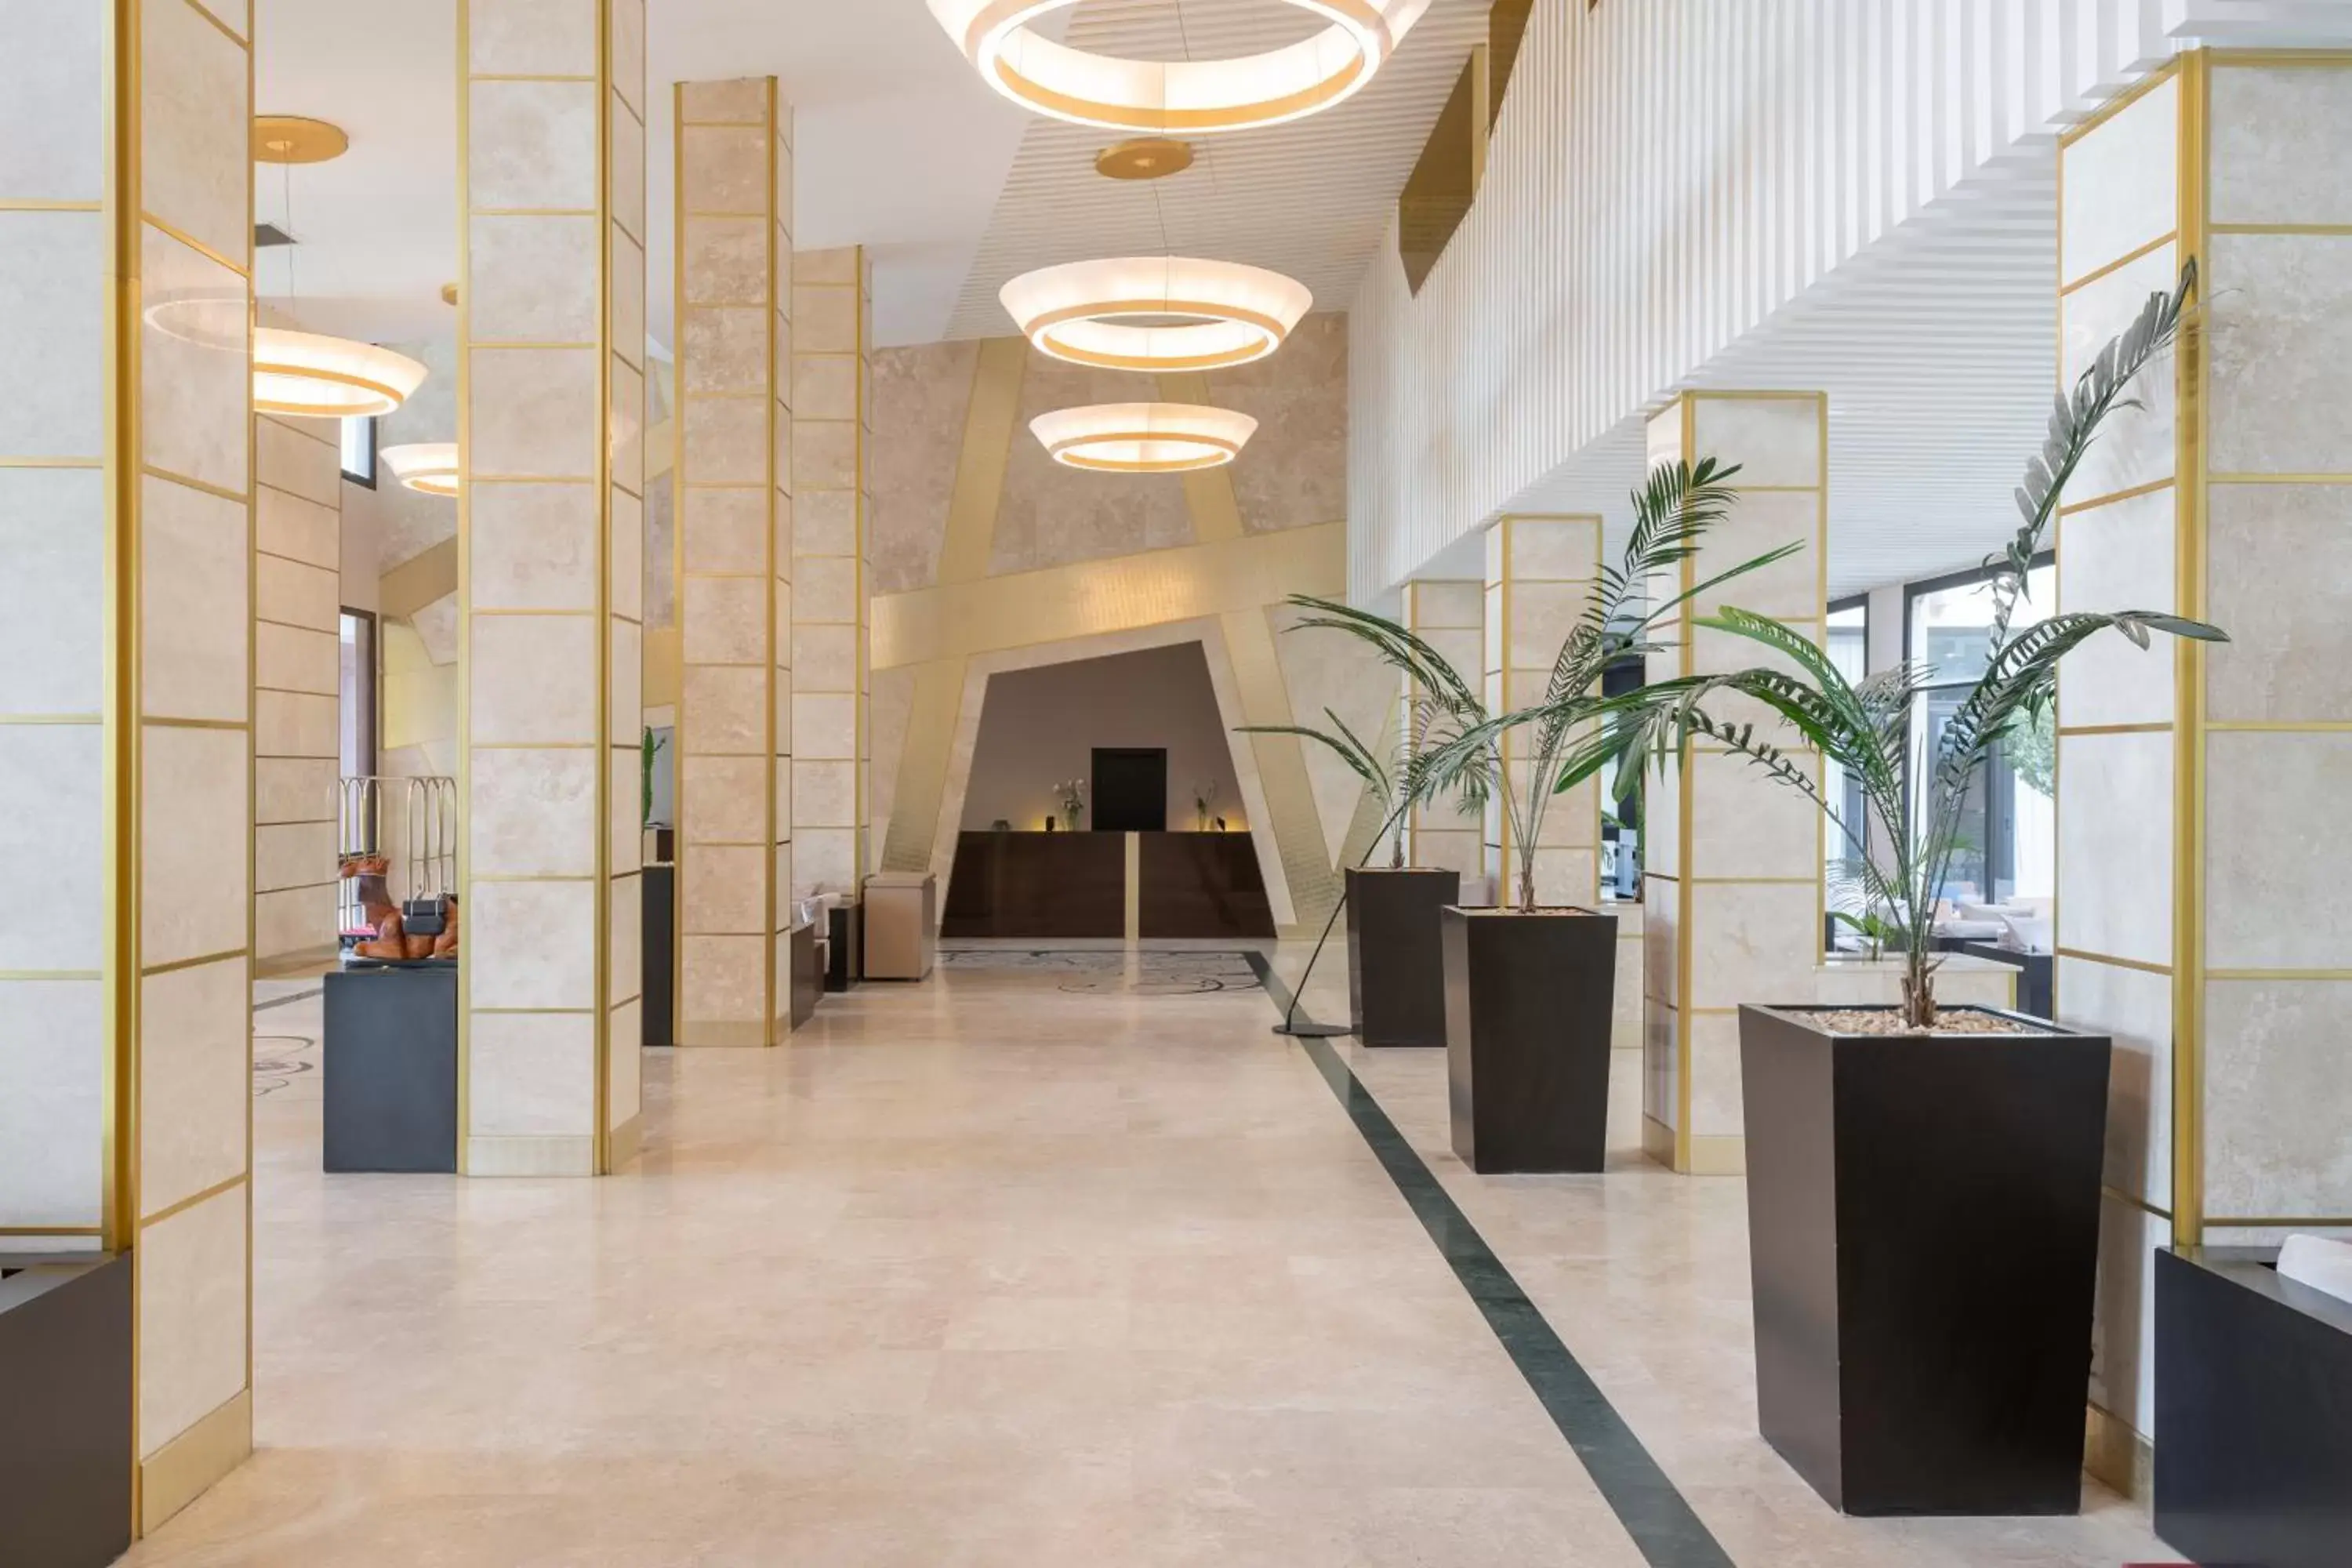 Lobby or reception, Lobby/Reception in Radisson Blu Hotel N'Djamena